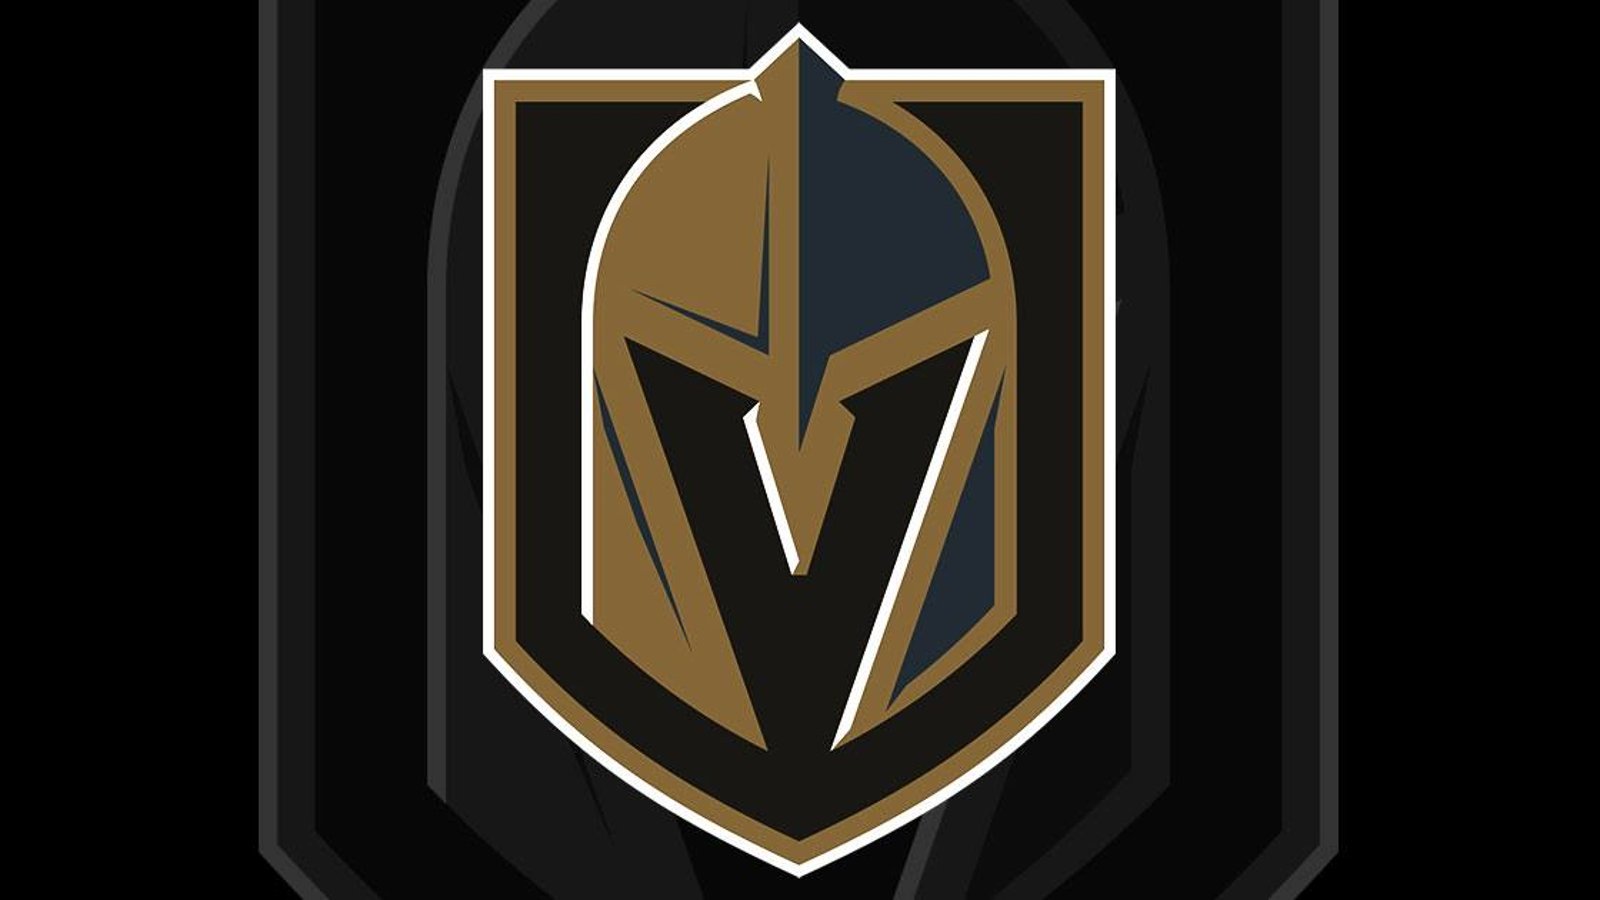 Breaking: Major update regarding Las Vegas Golden Knights